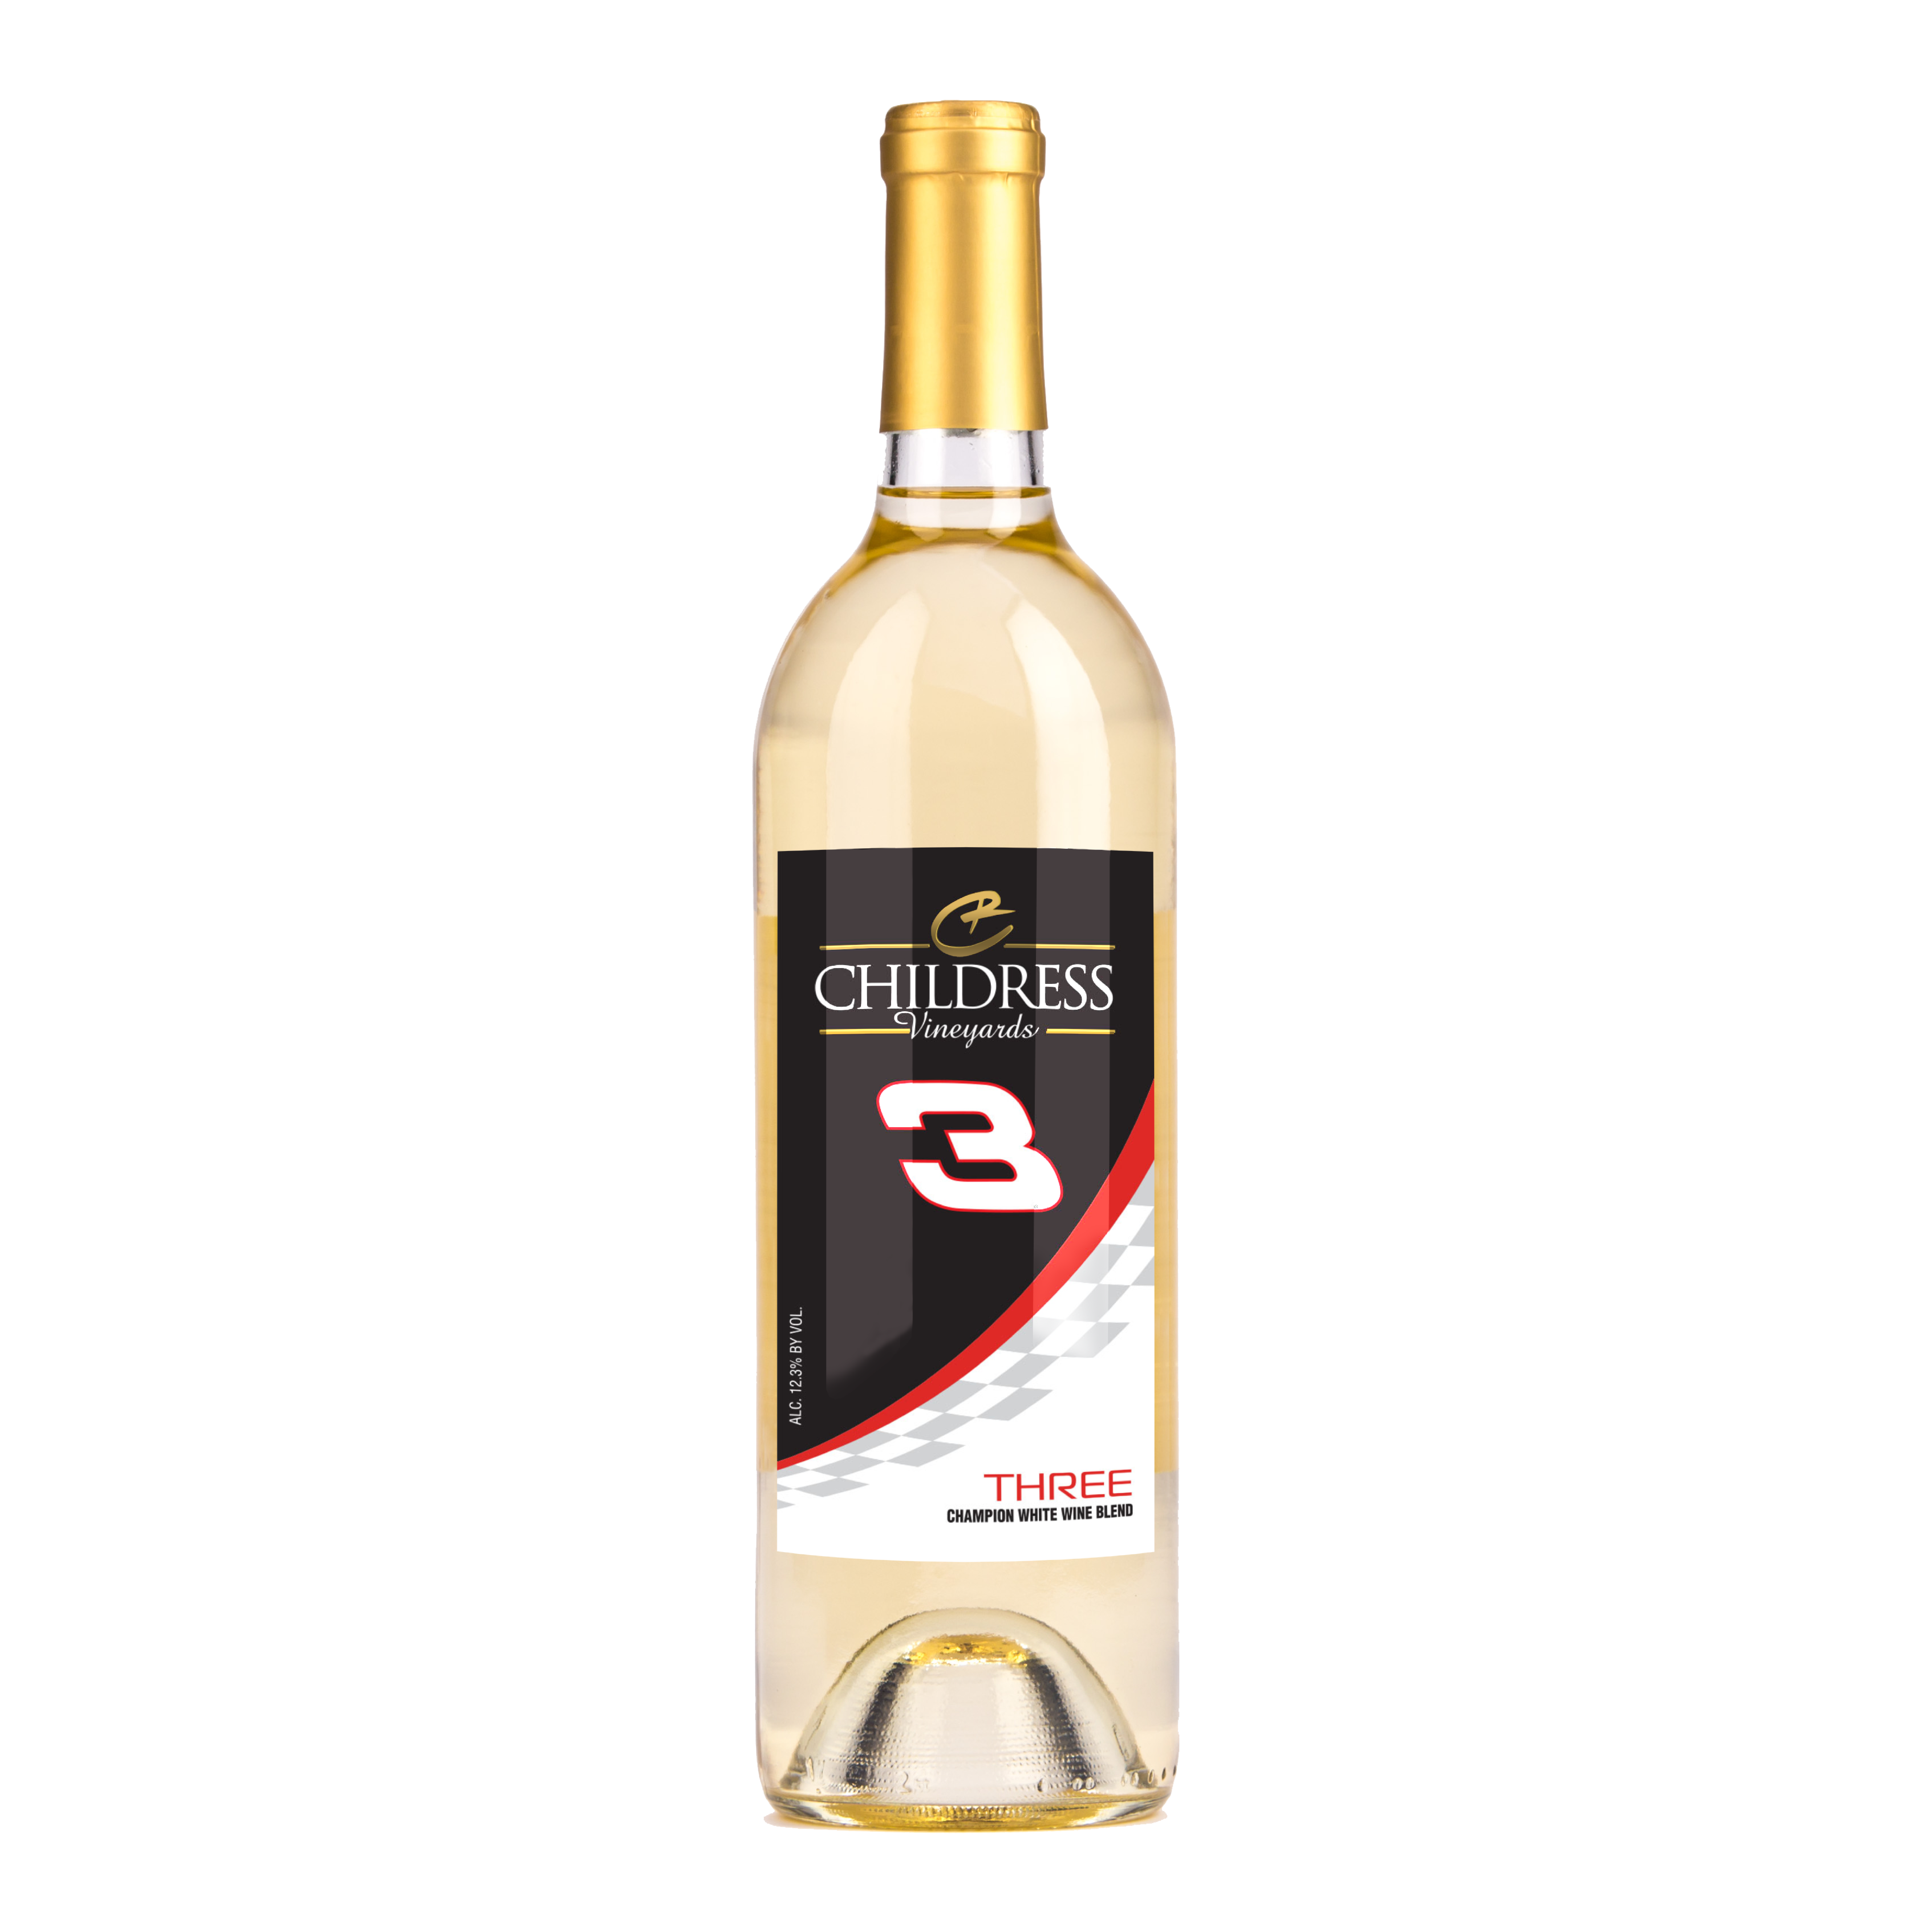 Childress Vineyards and Winery Three White Wine Blend